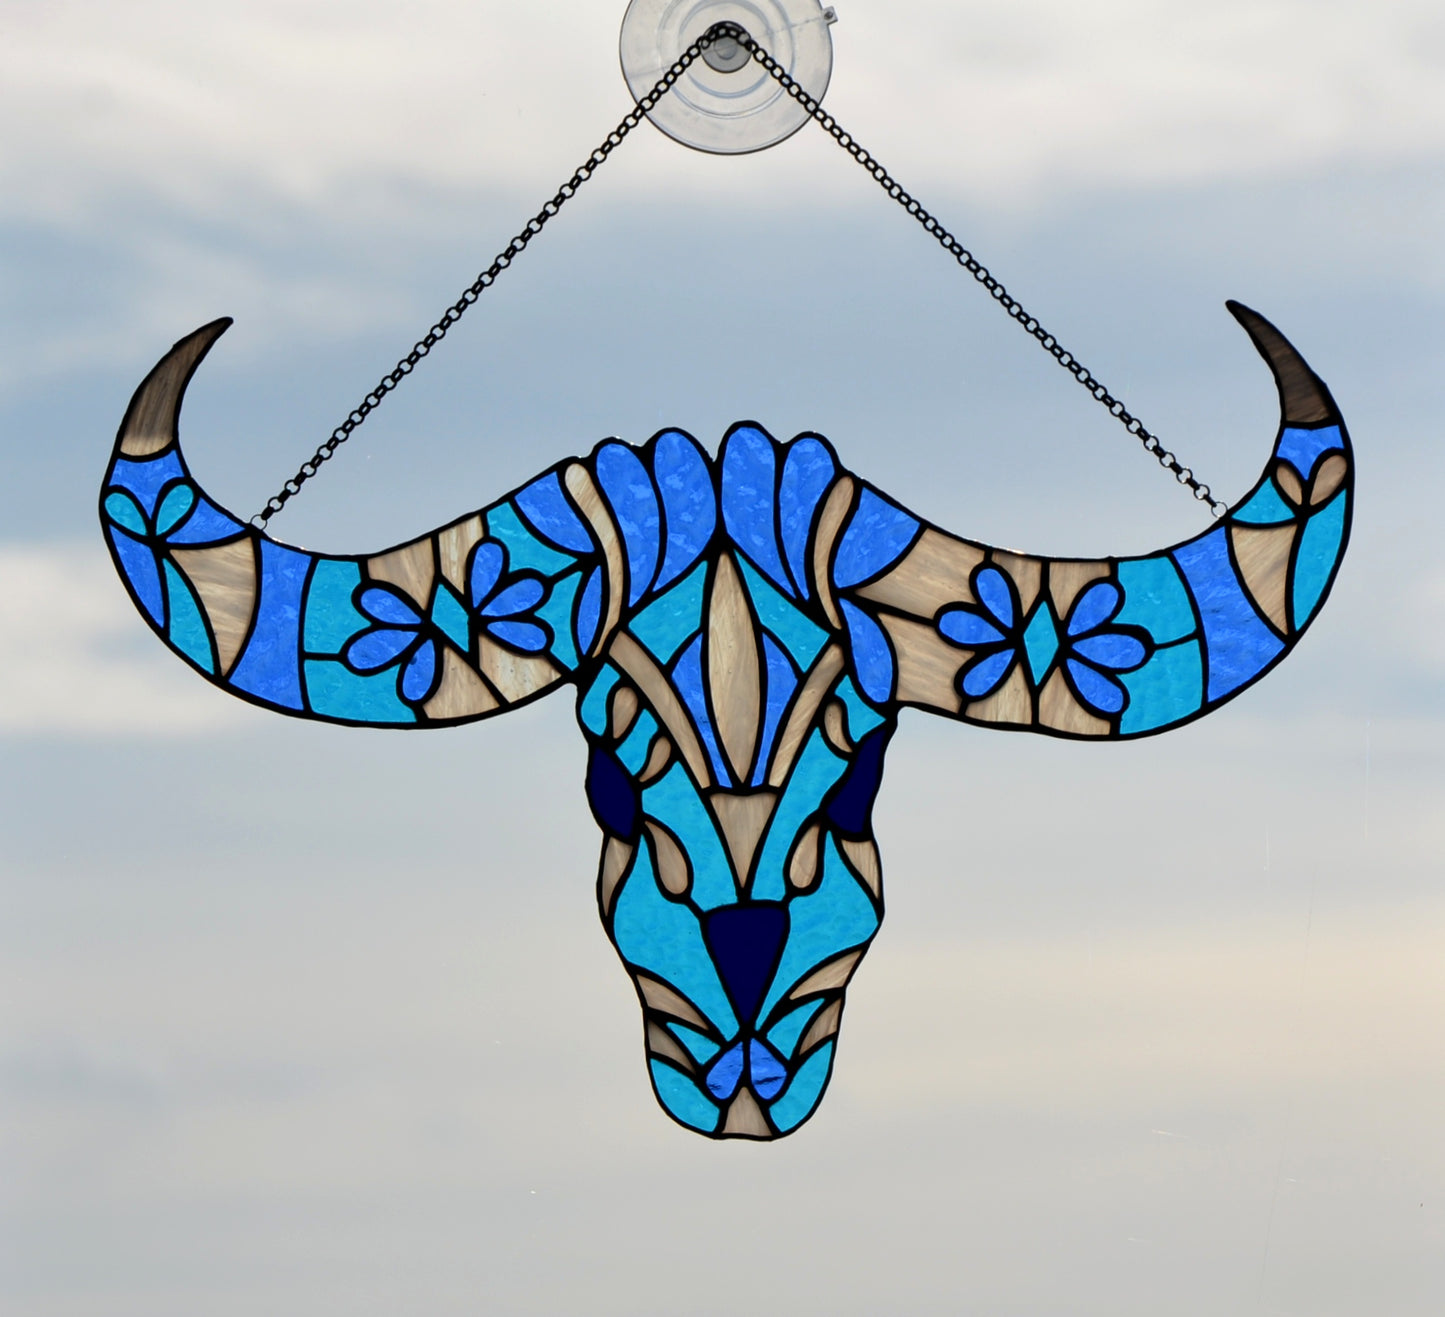 Stained glass suncatcher Window hanging Bull skull Folk art Garden decor Mother's day gift